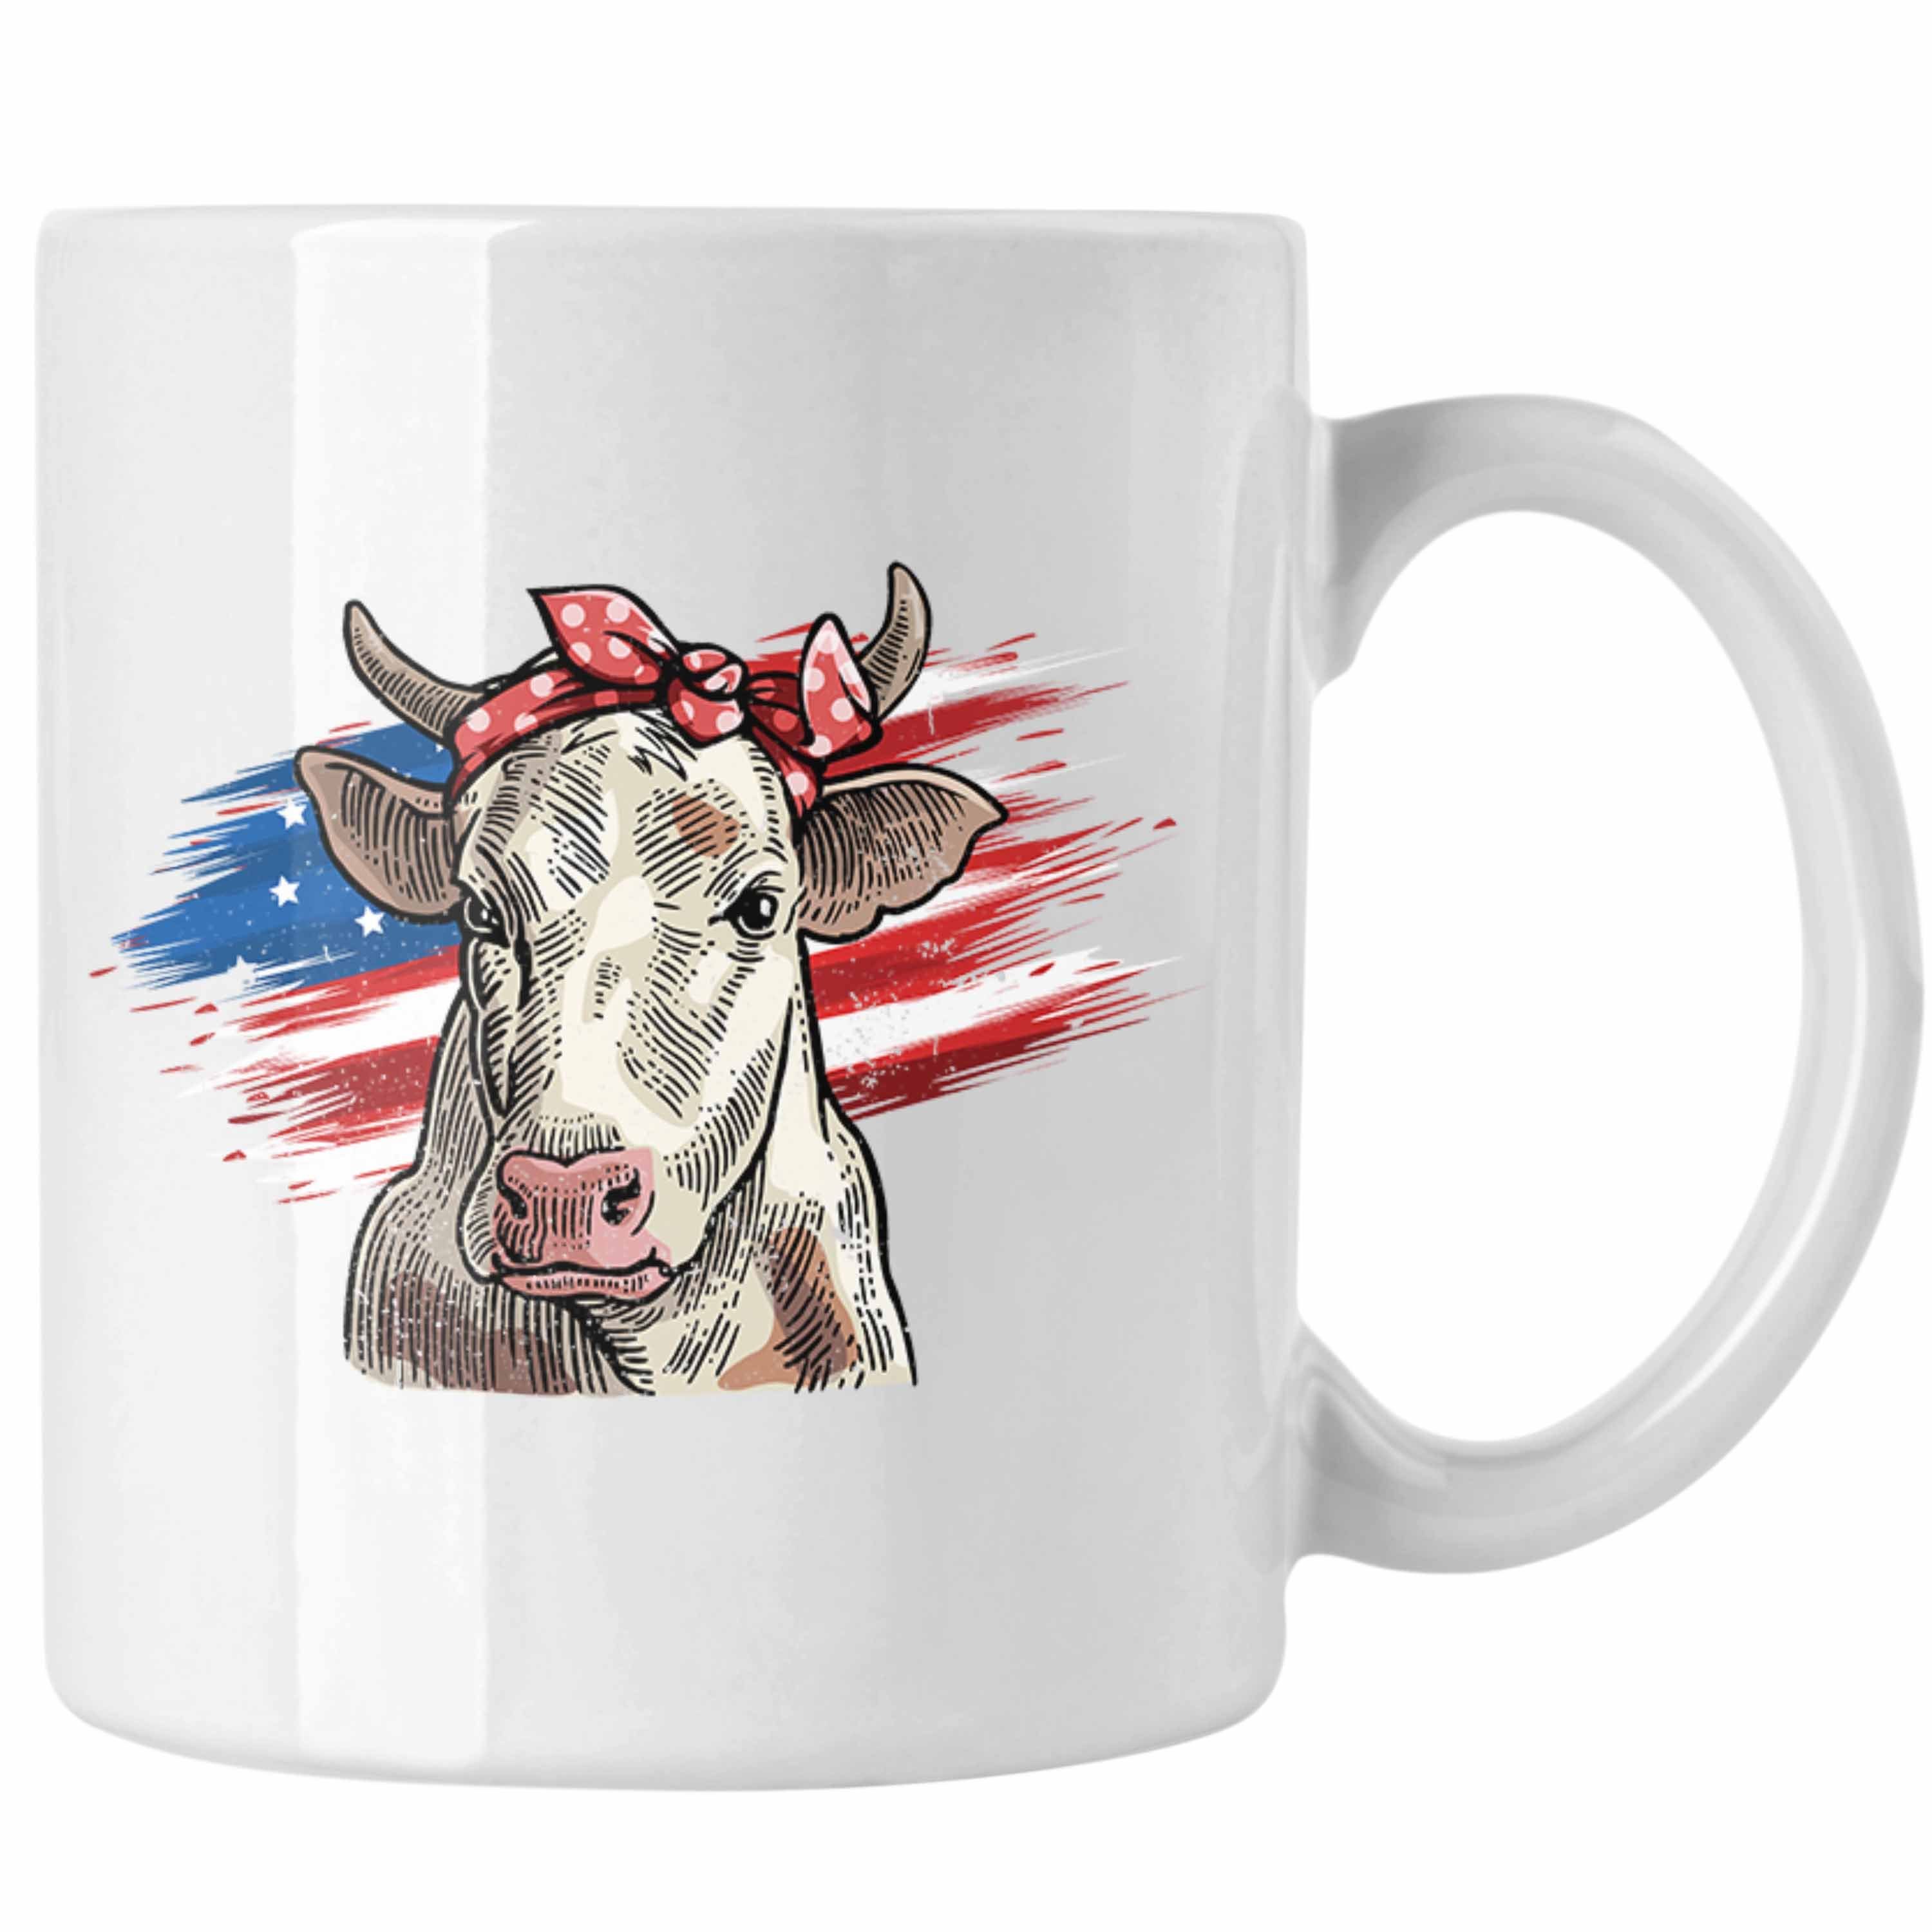 Geburtstag Trendation Geschenkidee Tasse - Kuh Geschenk für Weiss Bauern Landwirt Frauen Tasse Amerikanische Trendation